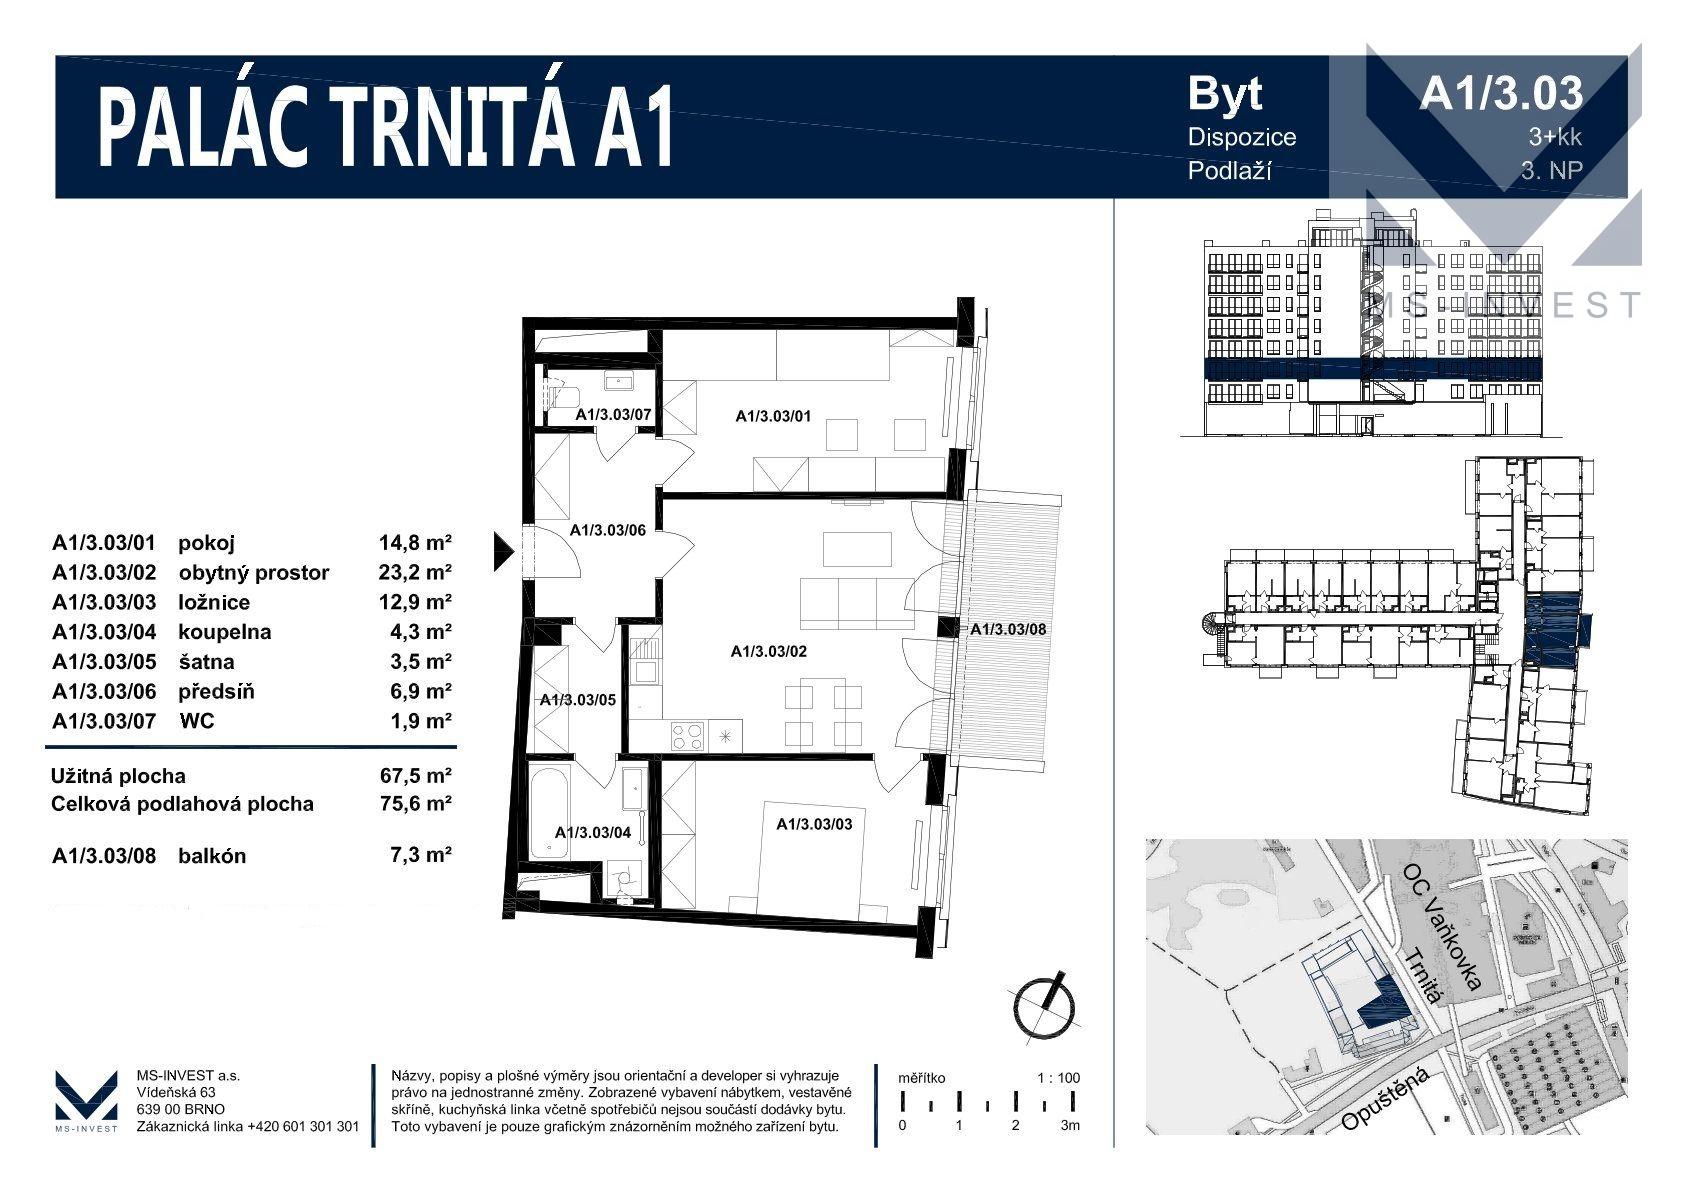 Prodej novostavby bytu 3+kk, Brno - Trnitá (A1/3.03), obrázek č. 3